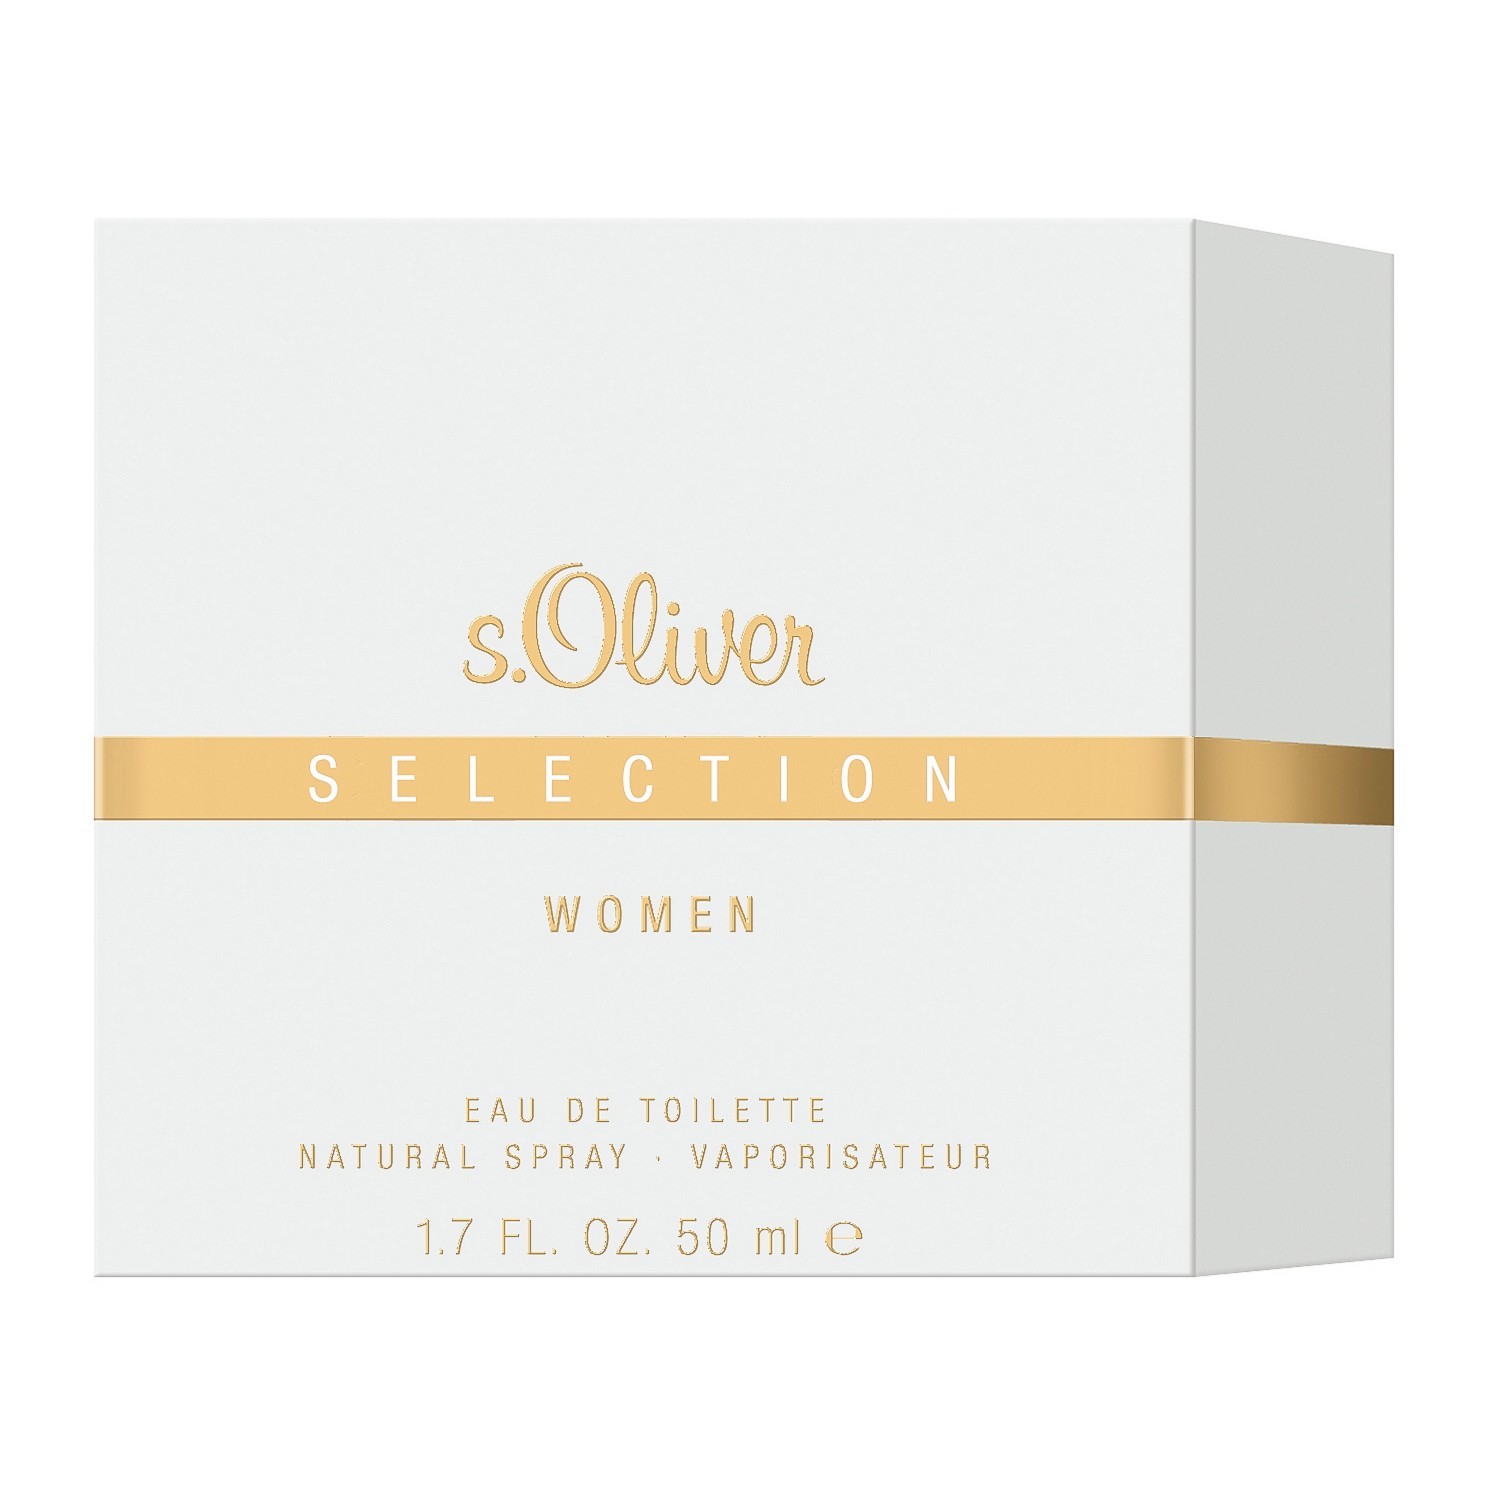 S.Oliver Selection Women Eau de Toilette 50ml